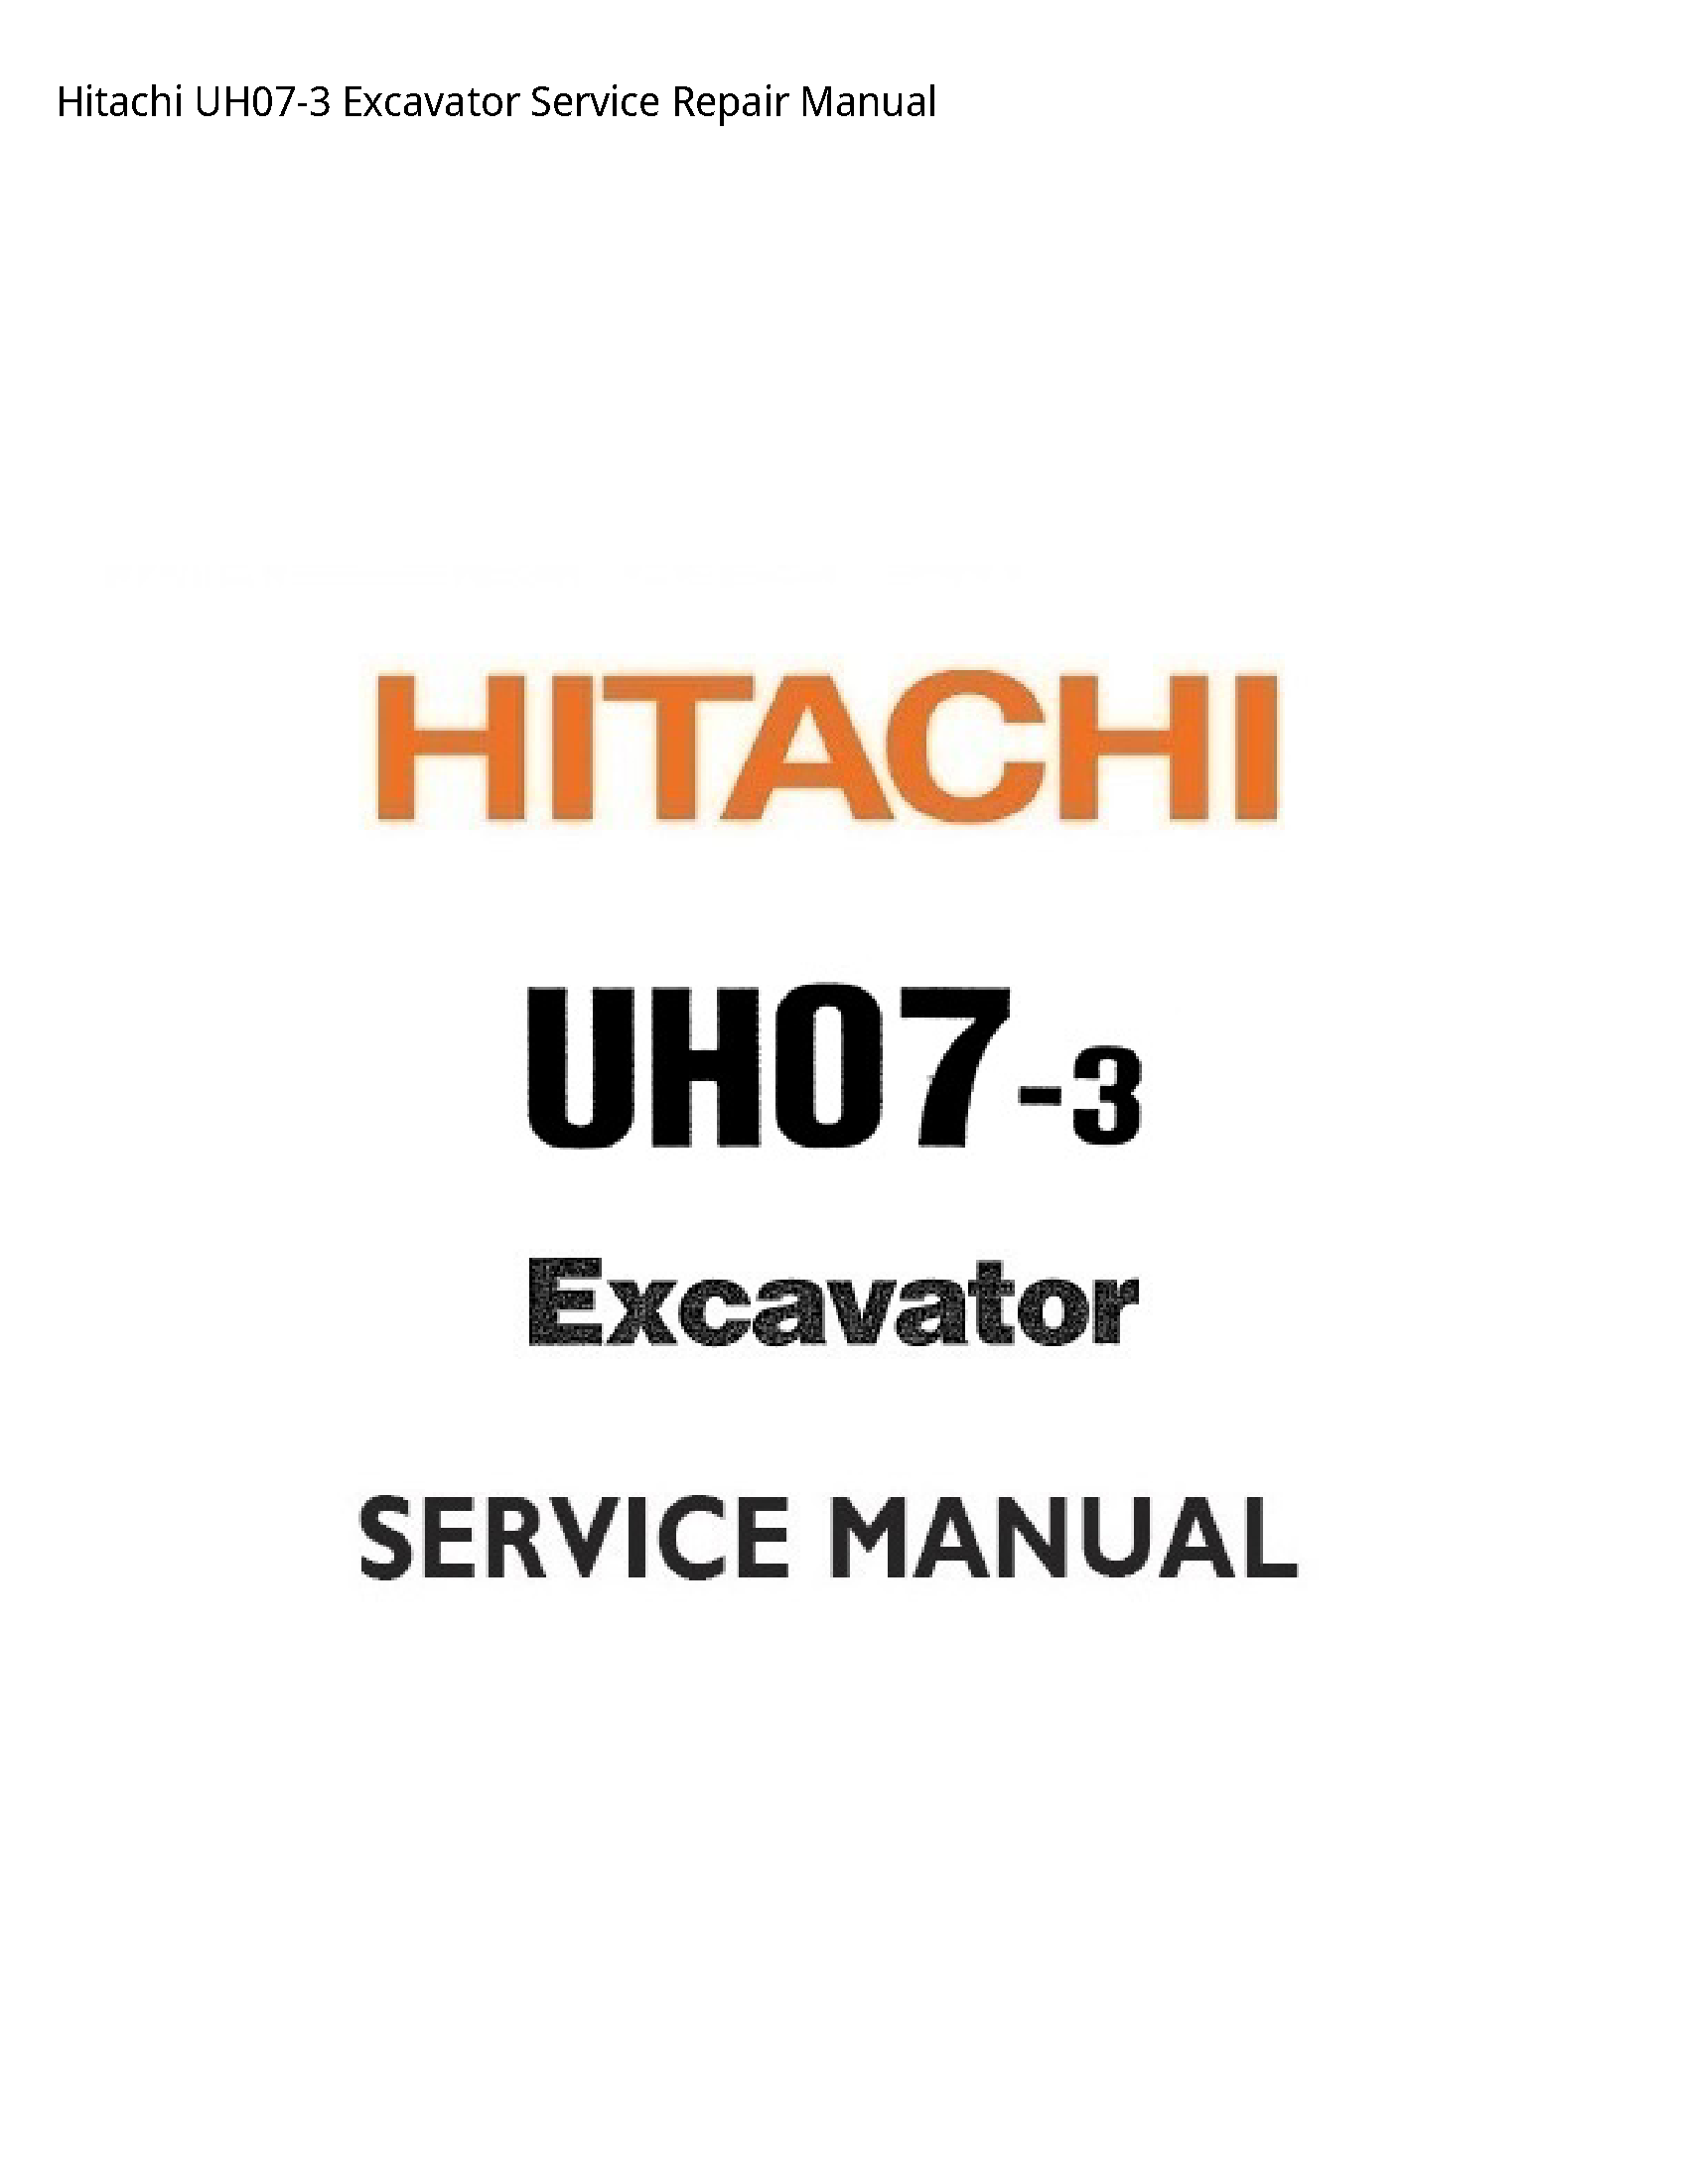 Hitachi UH07-3 Excavator manual